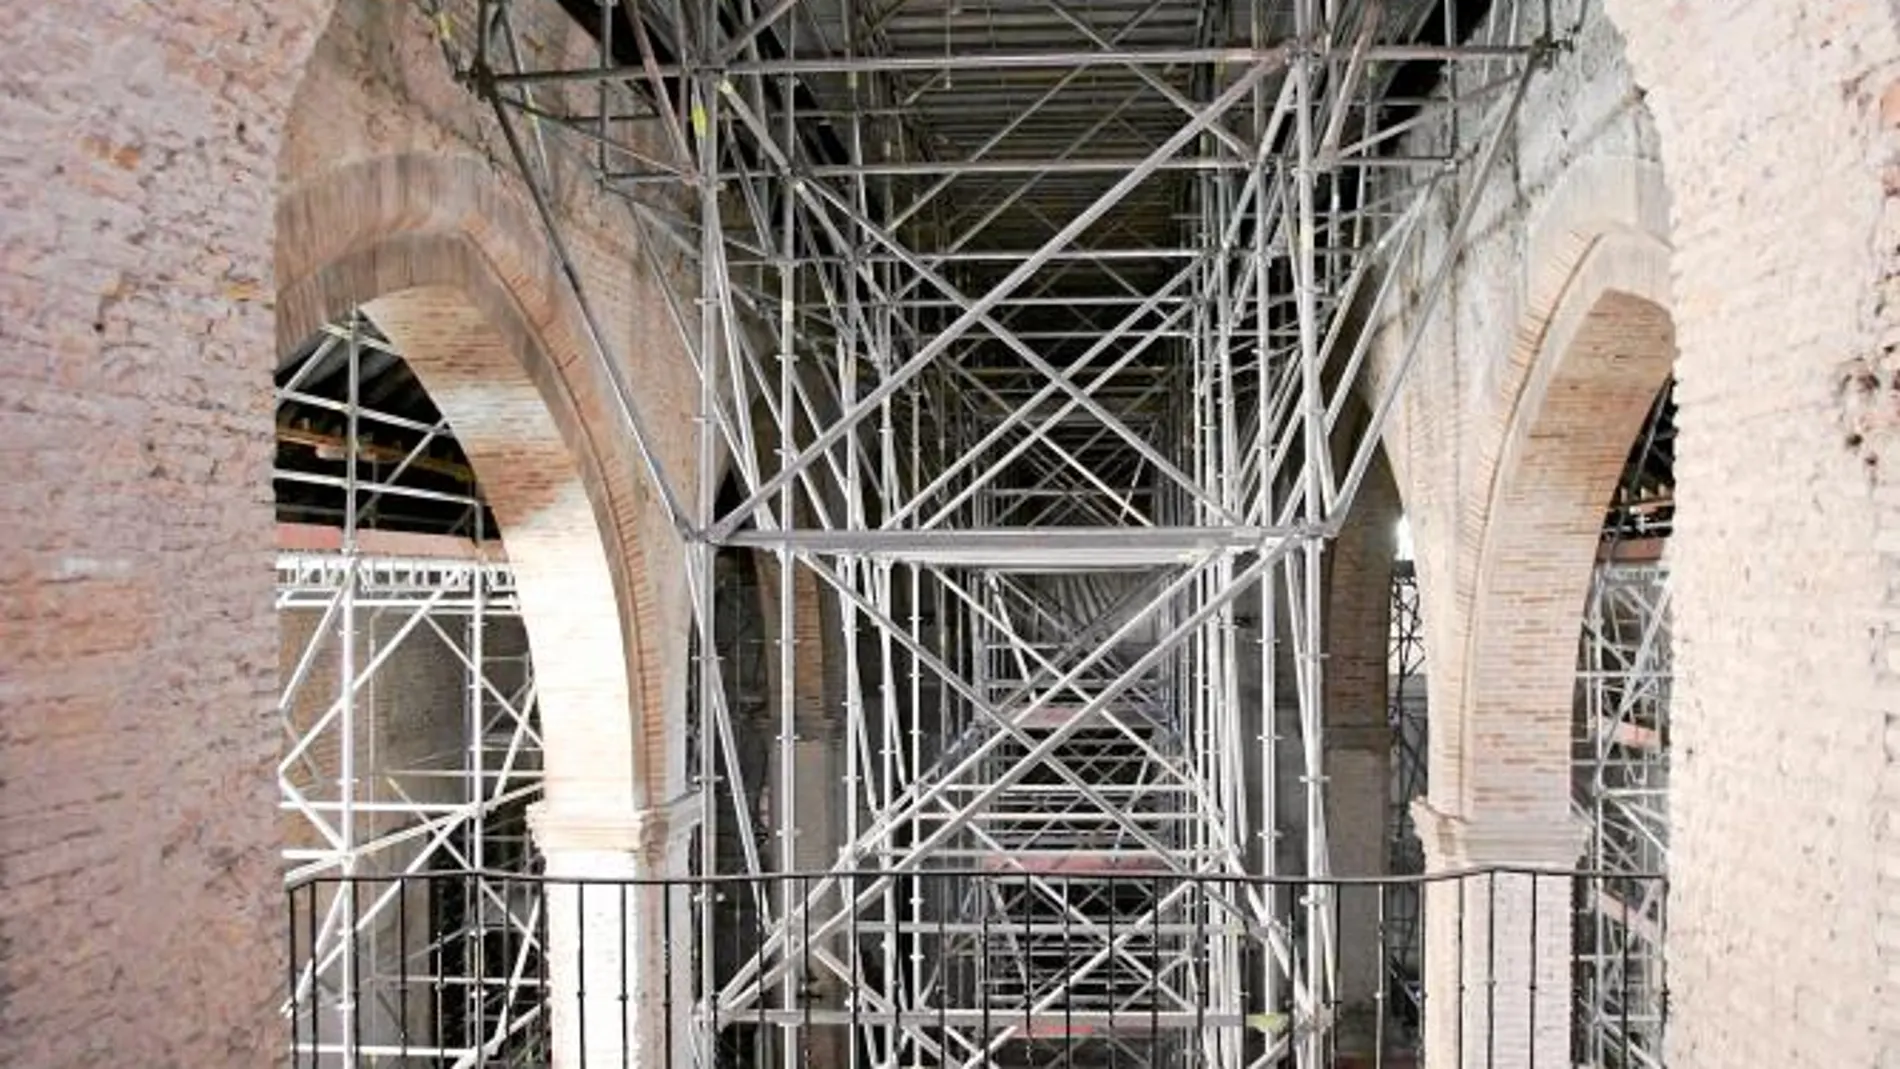 La segunda fase de la restauración se centra en rehabilitar el interior del templo mudéjar del siglo XIV